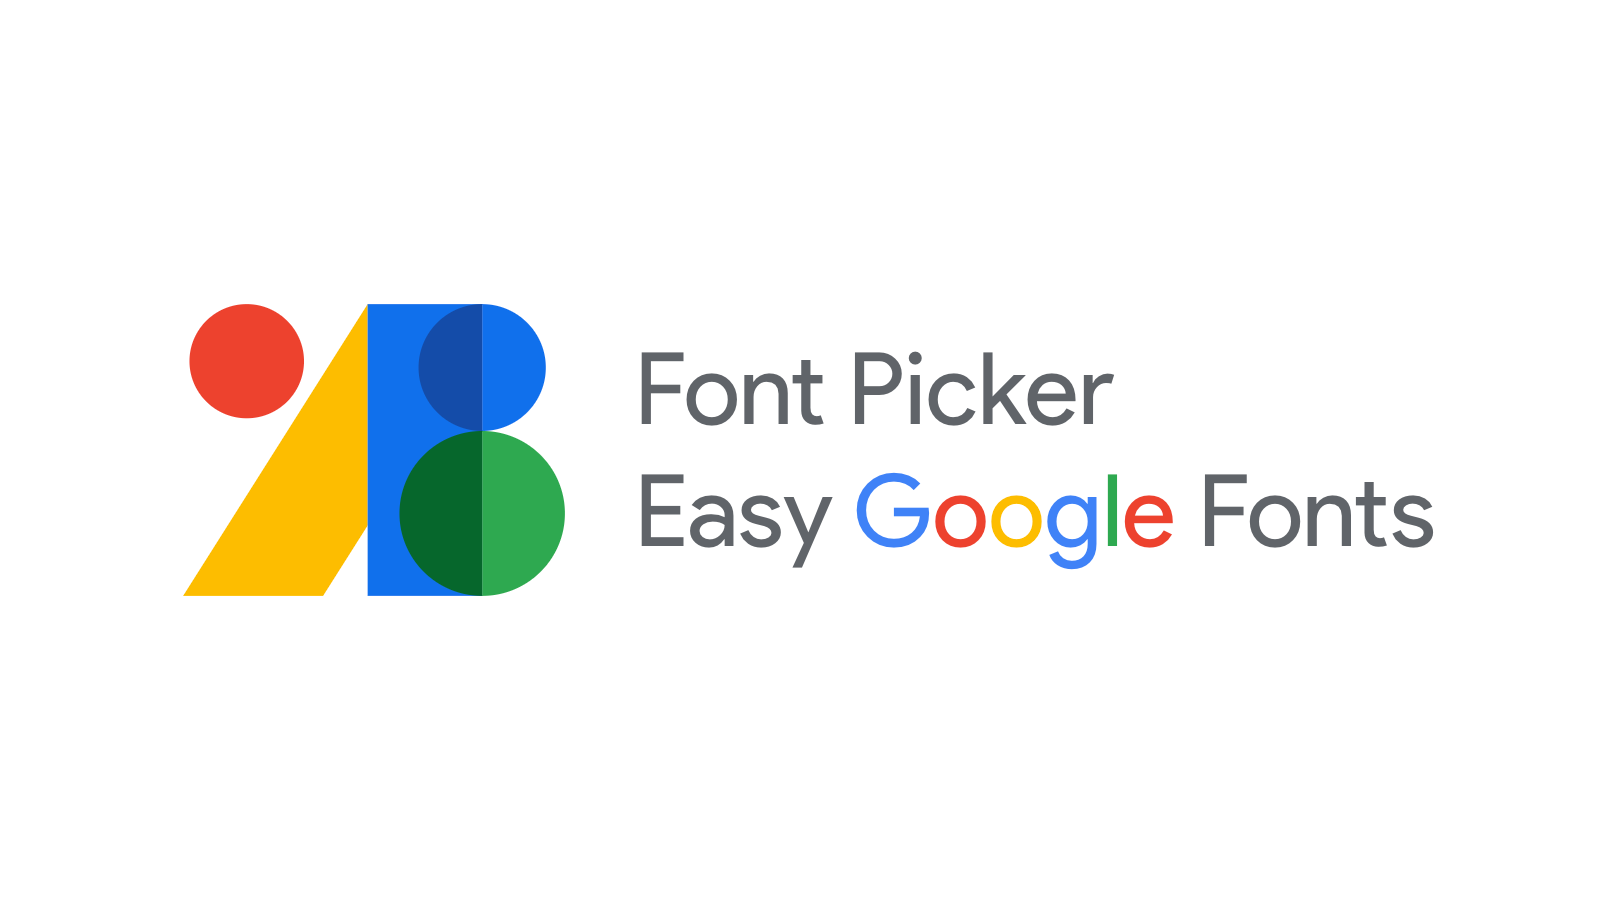 Verwenden Sie Google Fonts, benutzerdefinierte Schriftarten